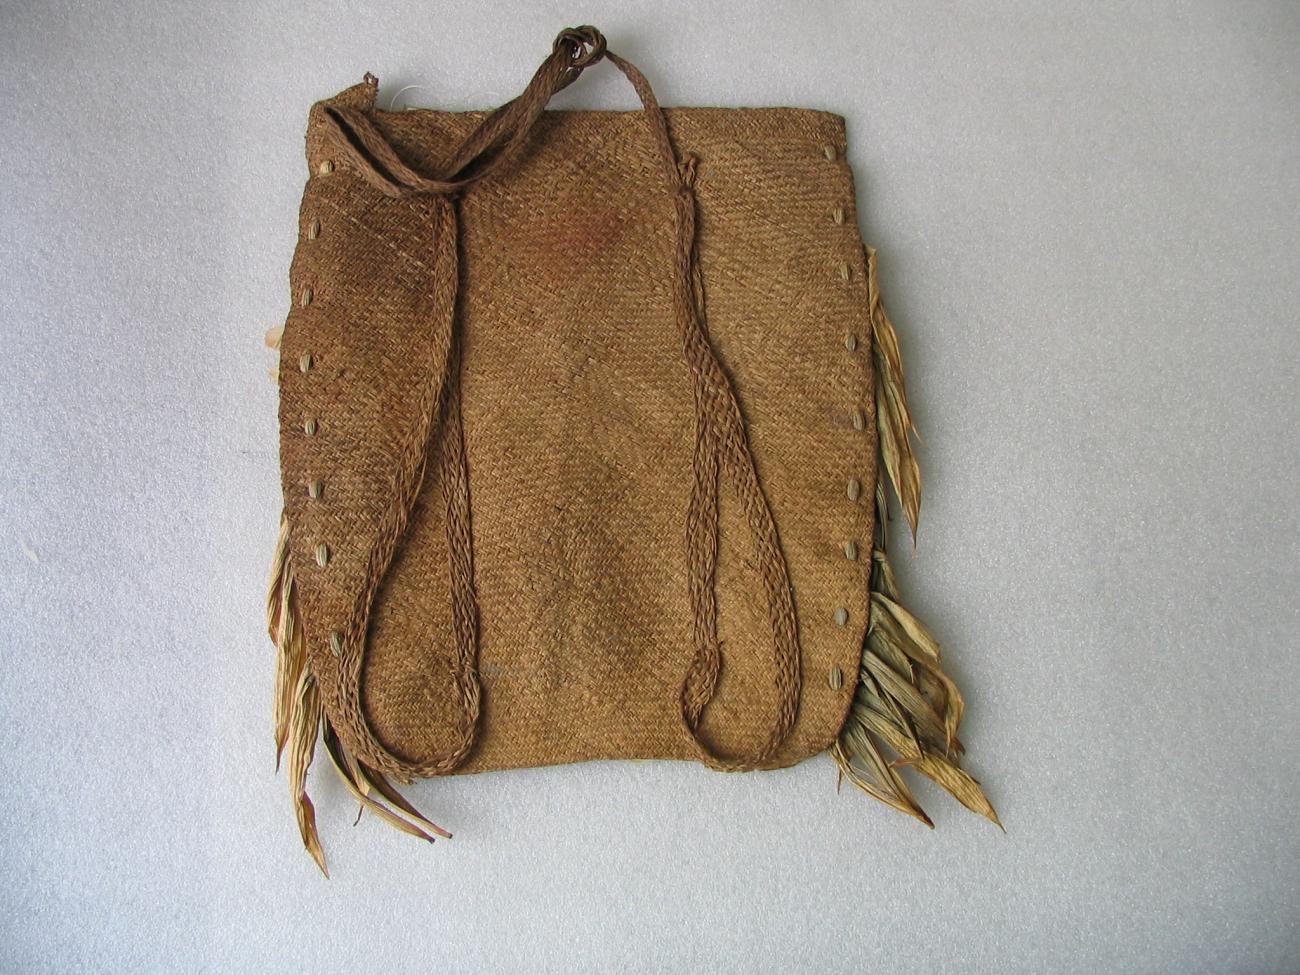 EA/199/1 - 
ornamental bag
